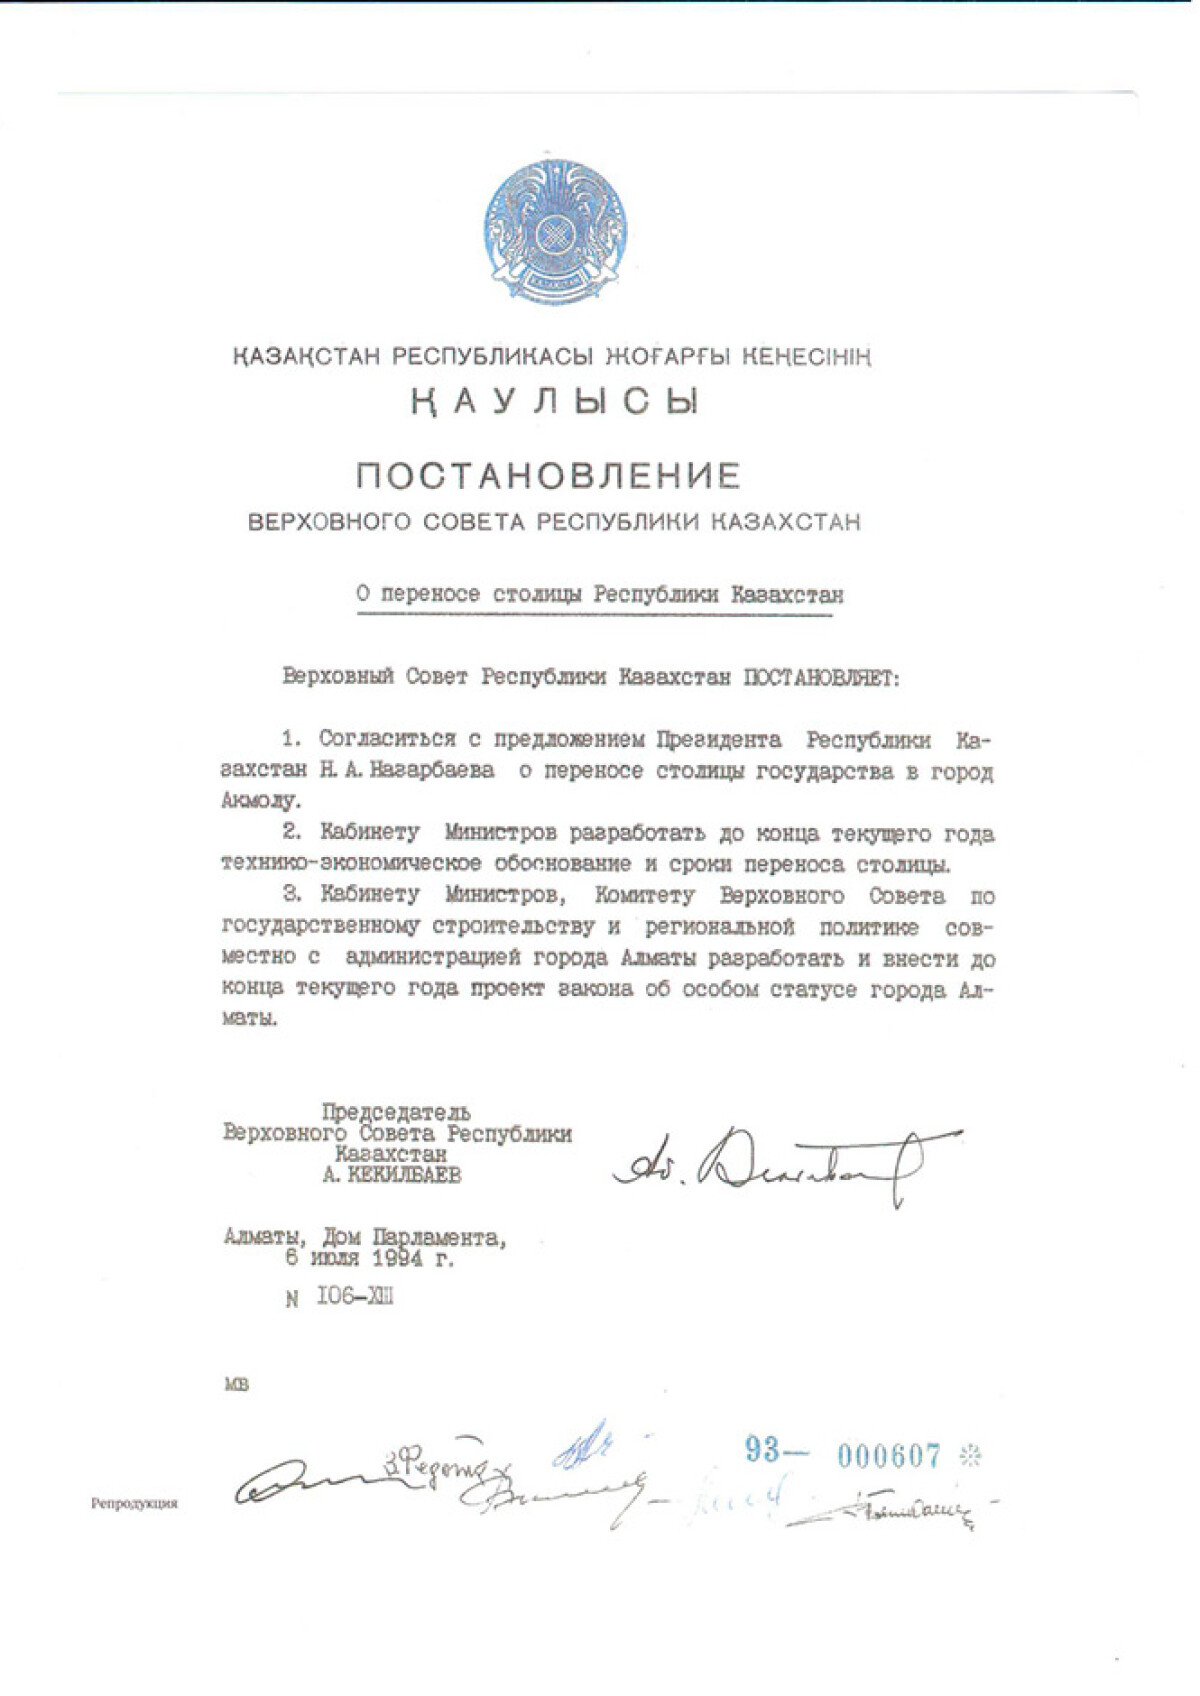 Постановление Верховного Совета Республики Казахстан о переносе столицы в Акмолу и особом статусе Алматы от 6 июля 1994 года - e-history.kz